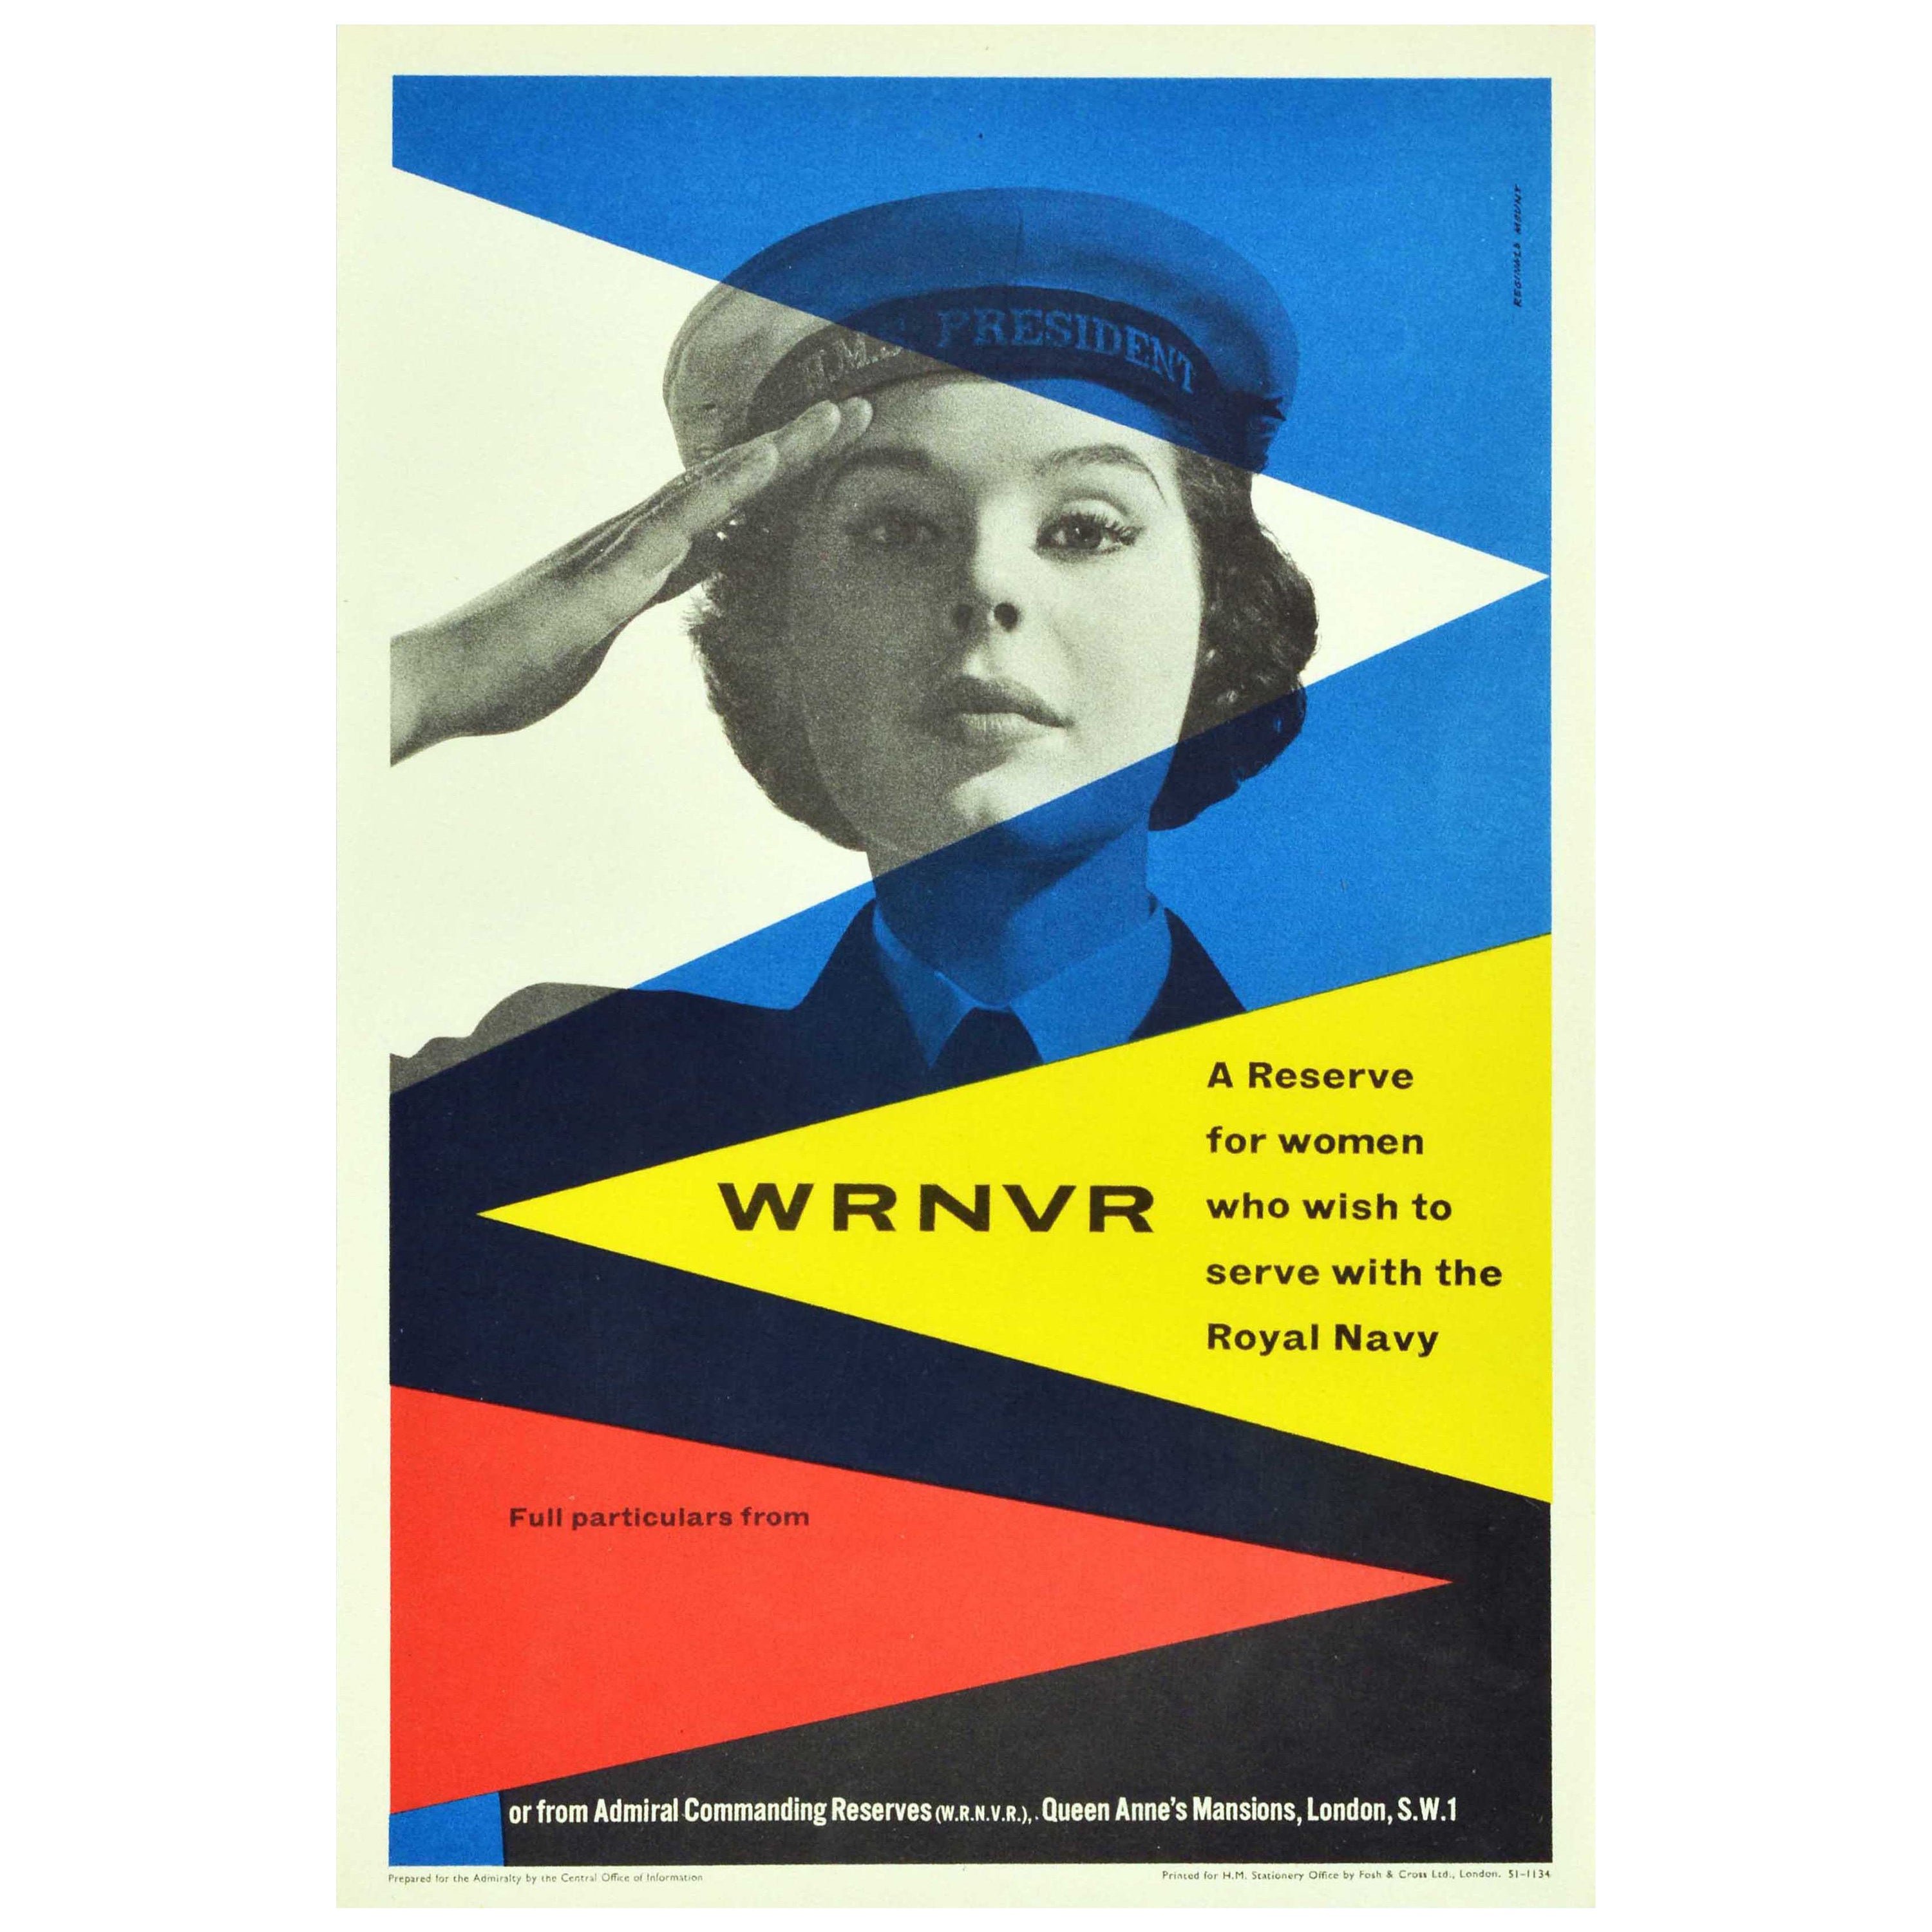 Original Vintage Military Poster For WRNVR Women's Royal Navy Volunteer Reserve